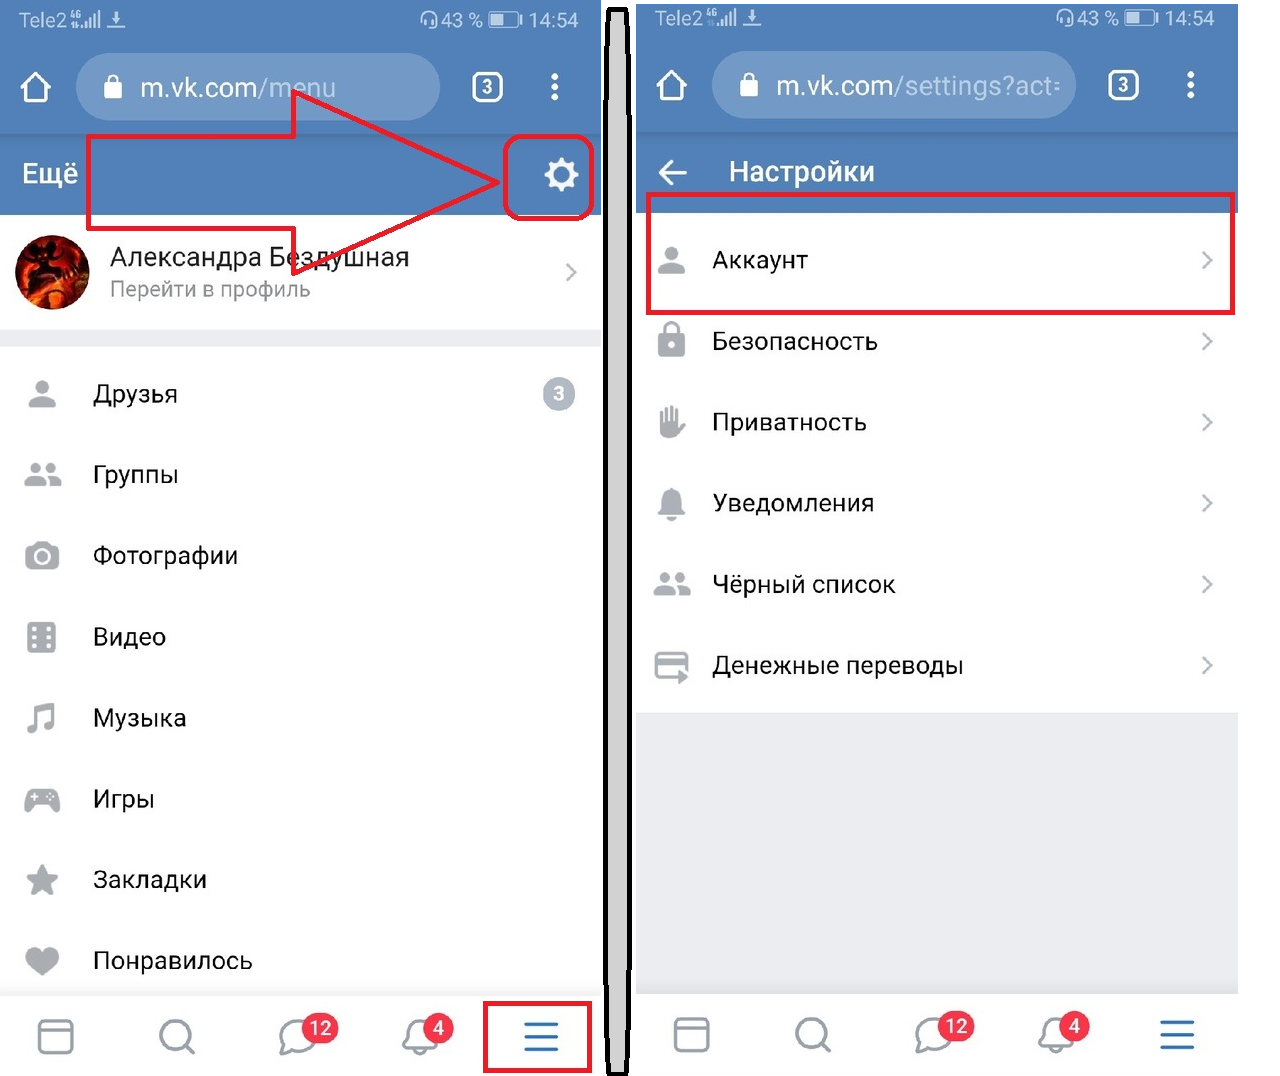 Как удалить страницу в вк с айфона - инструкция тарифкин.ру
как удалить страницу в вк с айфона - инструкция